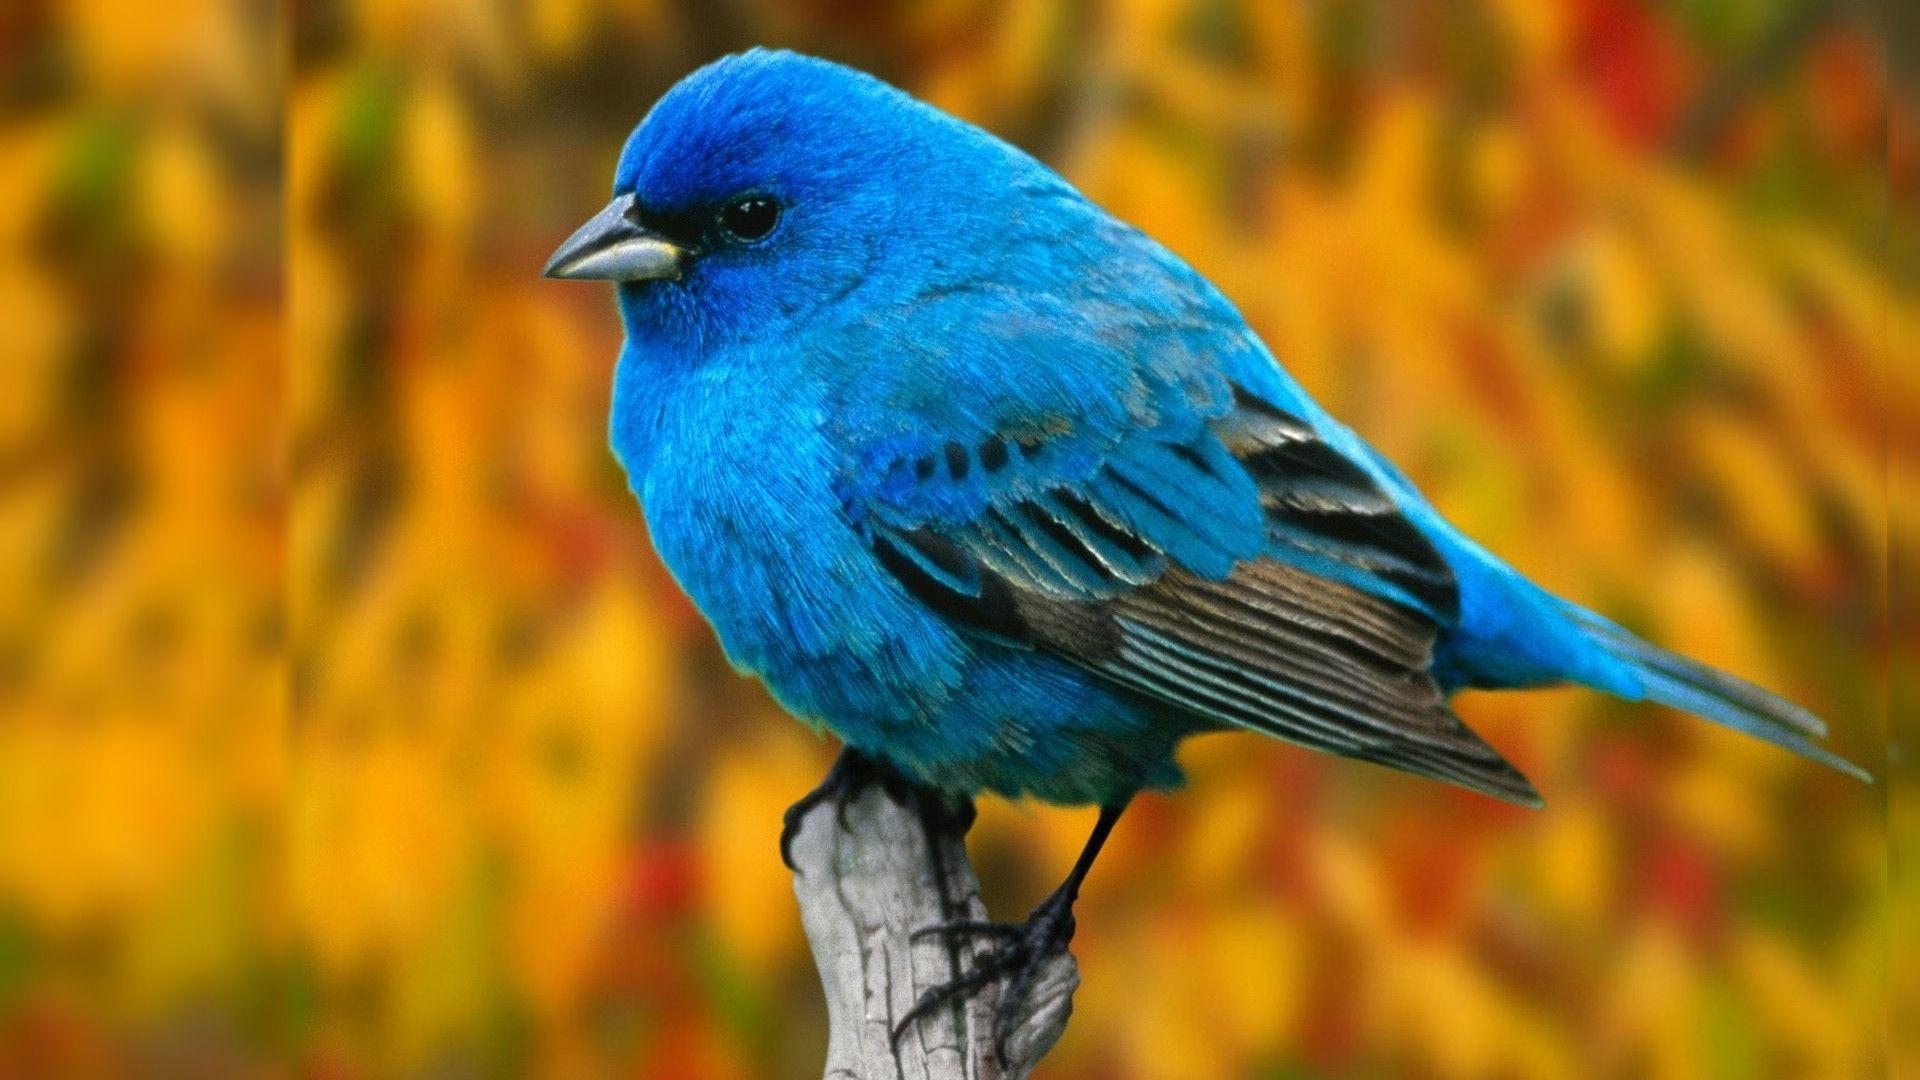 Bird Desktop Wallpaper: Blue Bird For Computer Wallpaper. .Ssofc